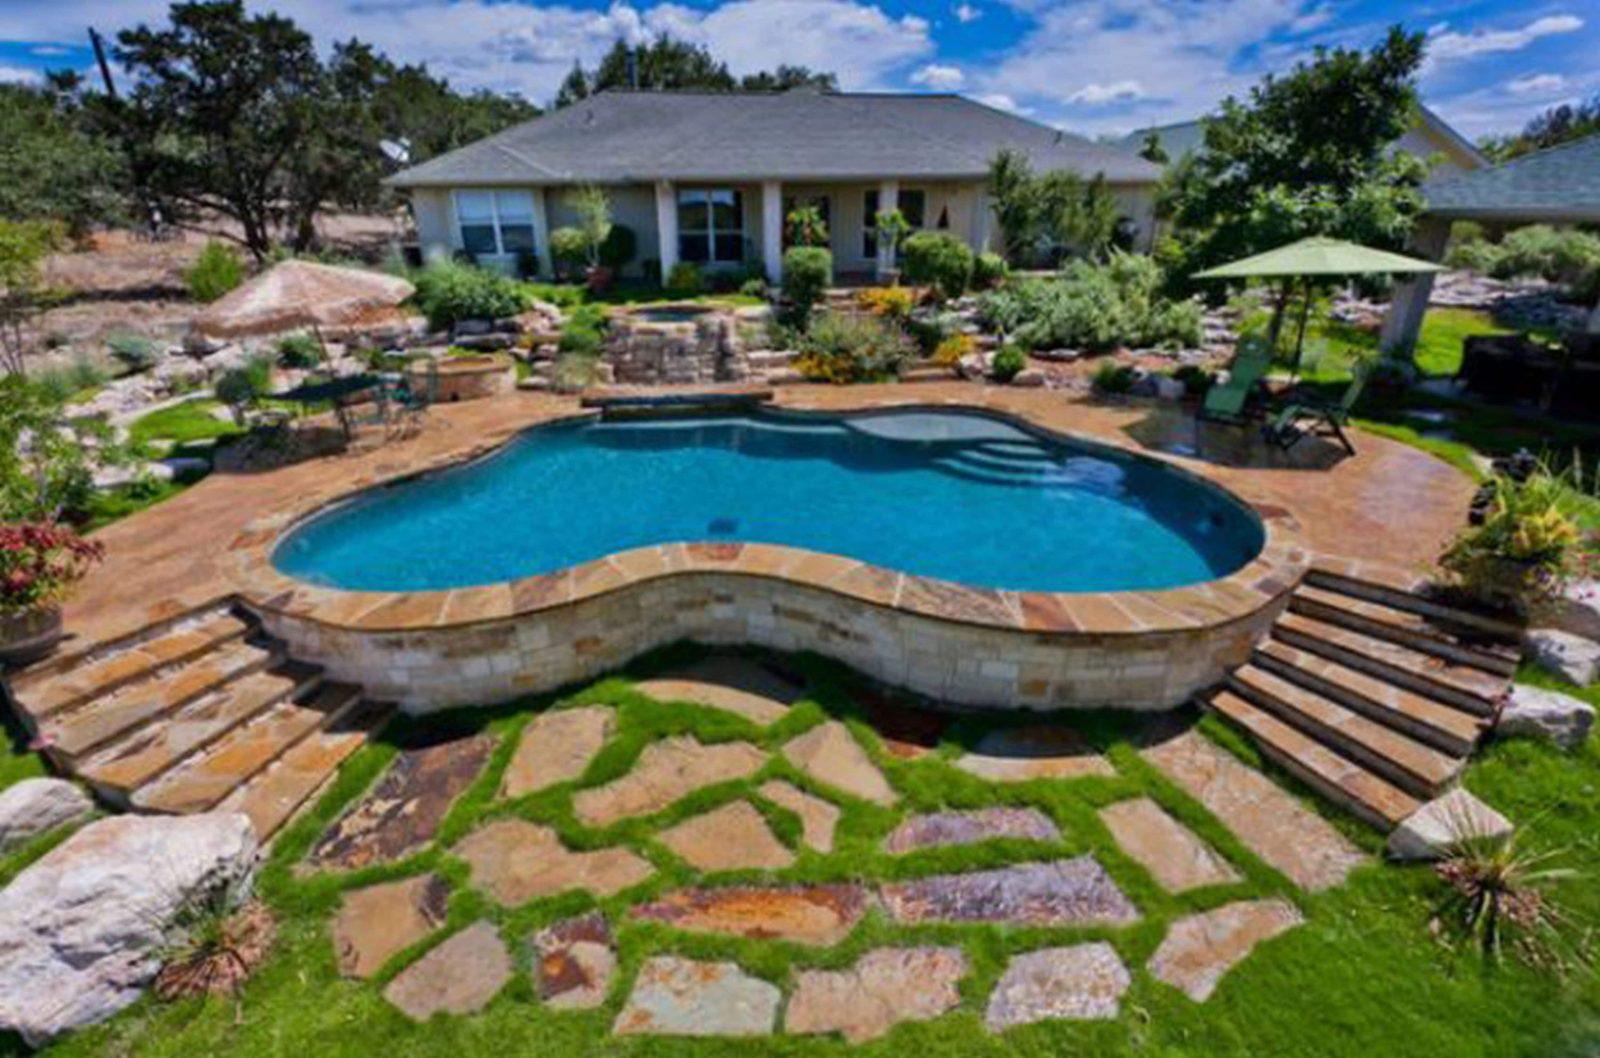 20 Amazing Backyard Pool Designs